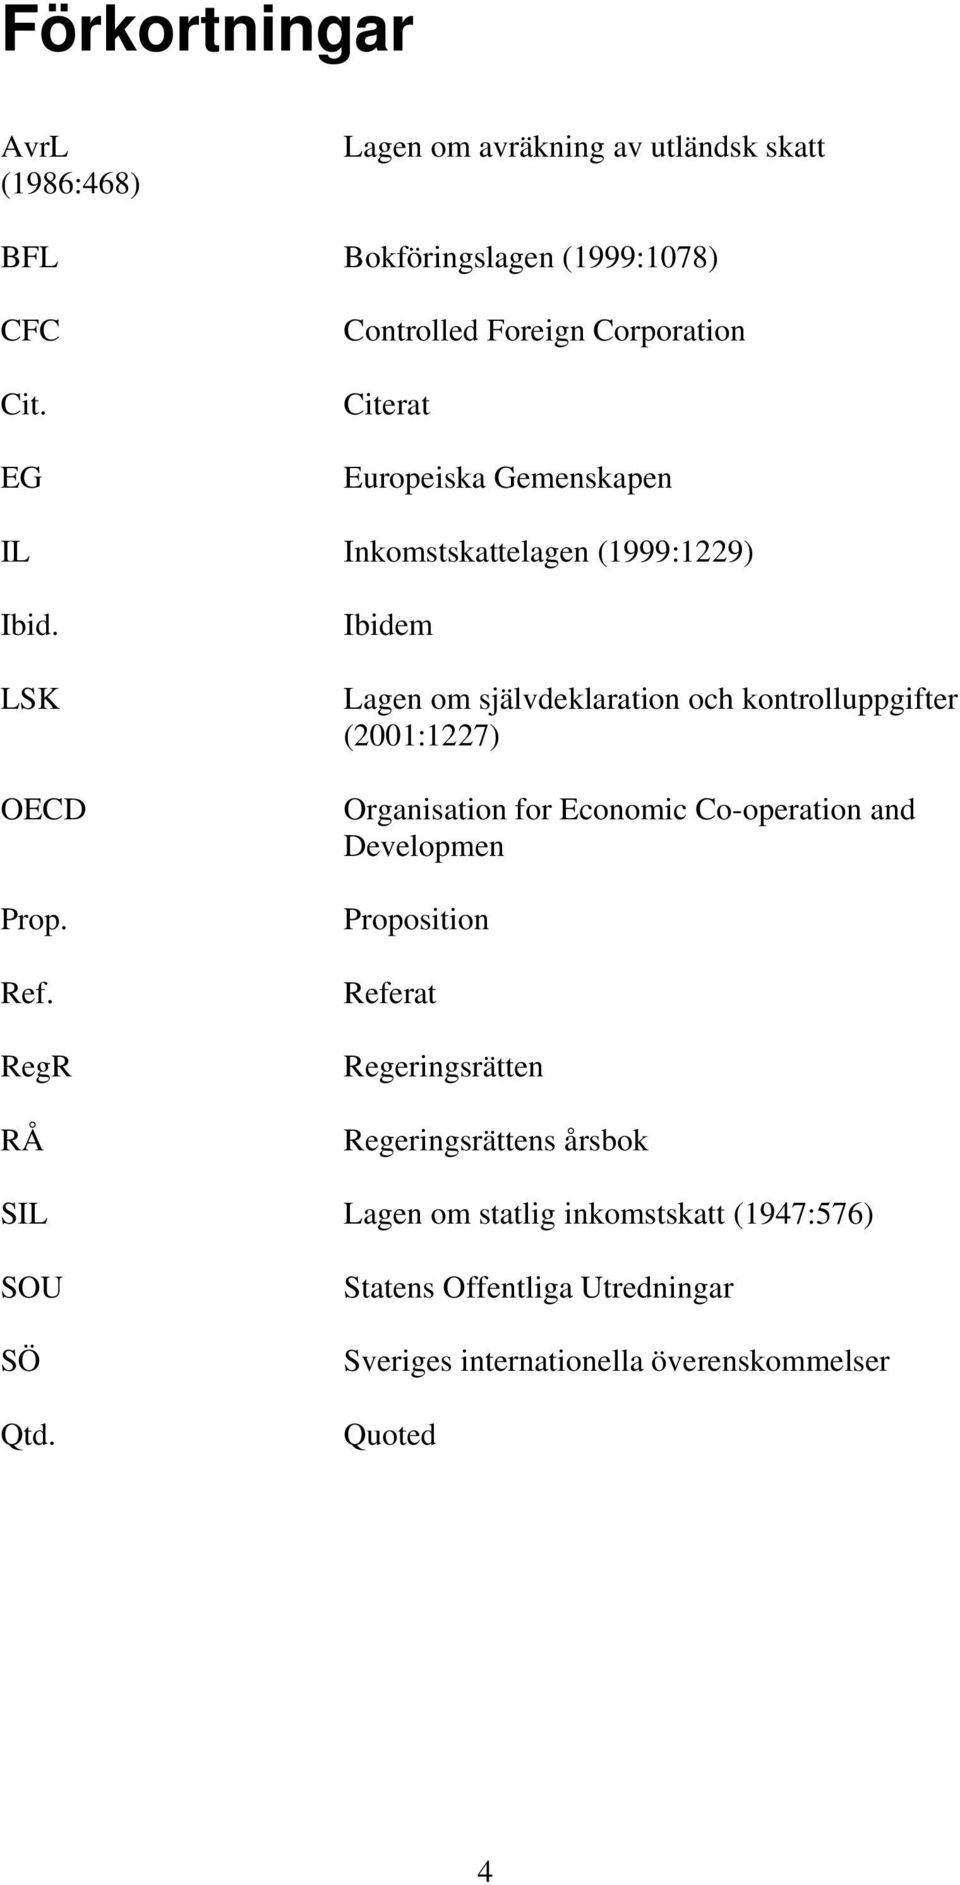 RegR RÅ Ibidem Lagen om självdeklaration och kontrolluppgifter (2001:1227) Organisation for Economic Co-operation and Developmen